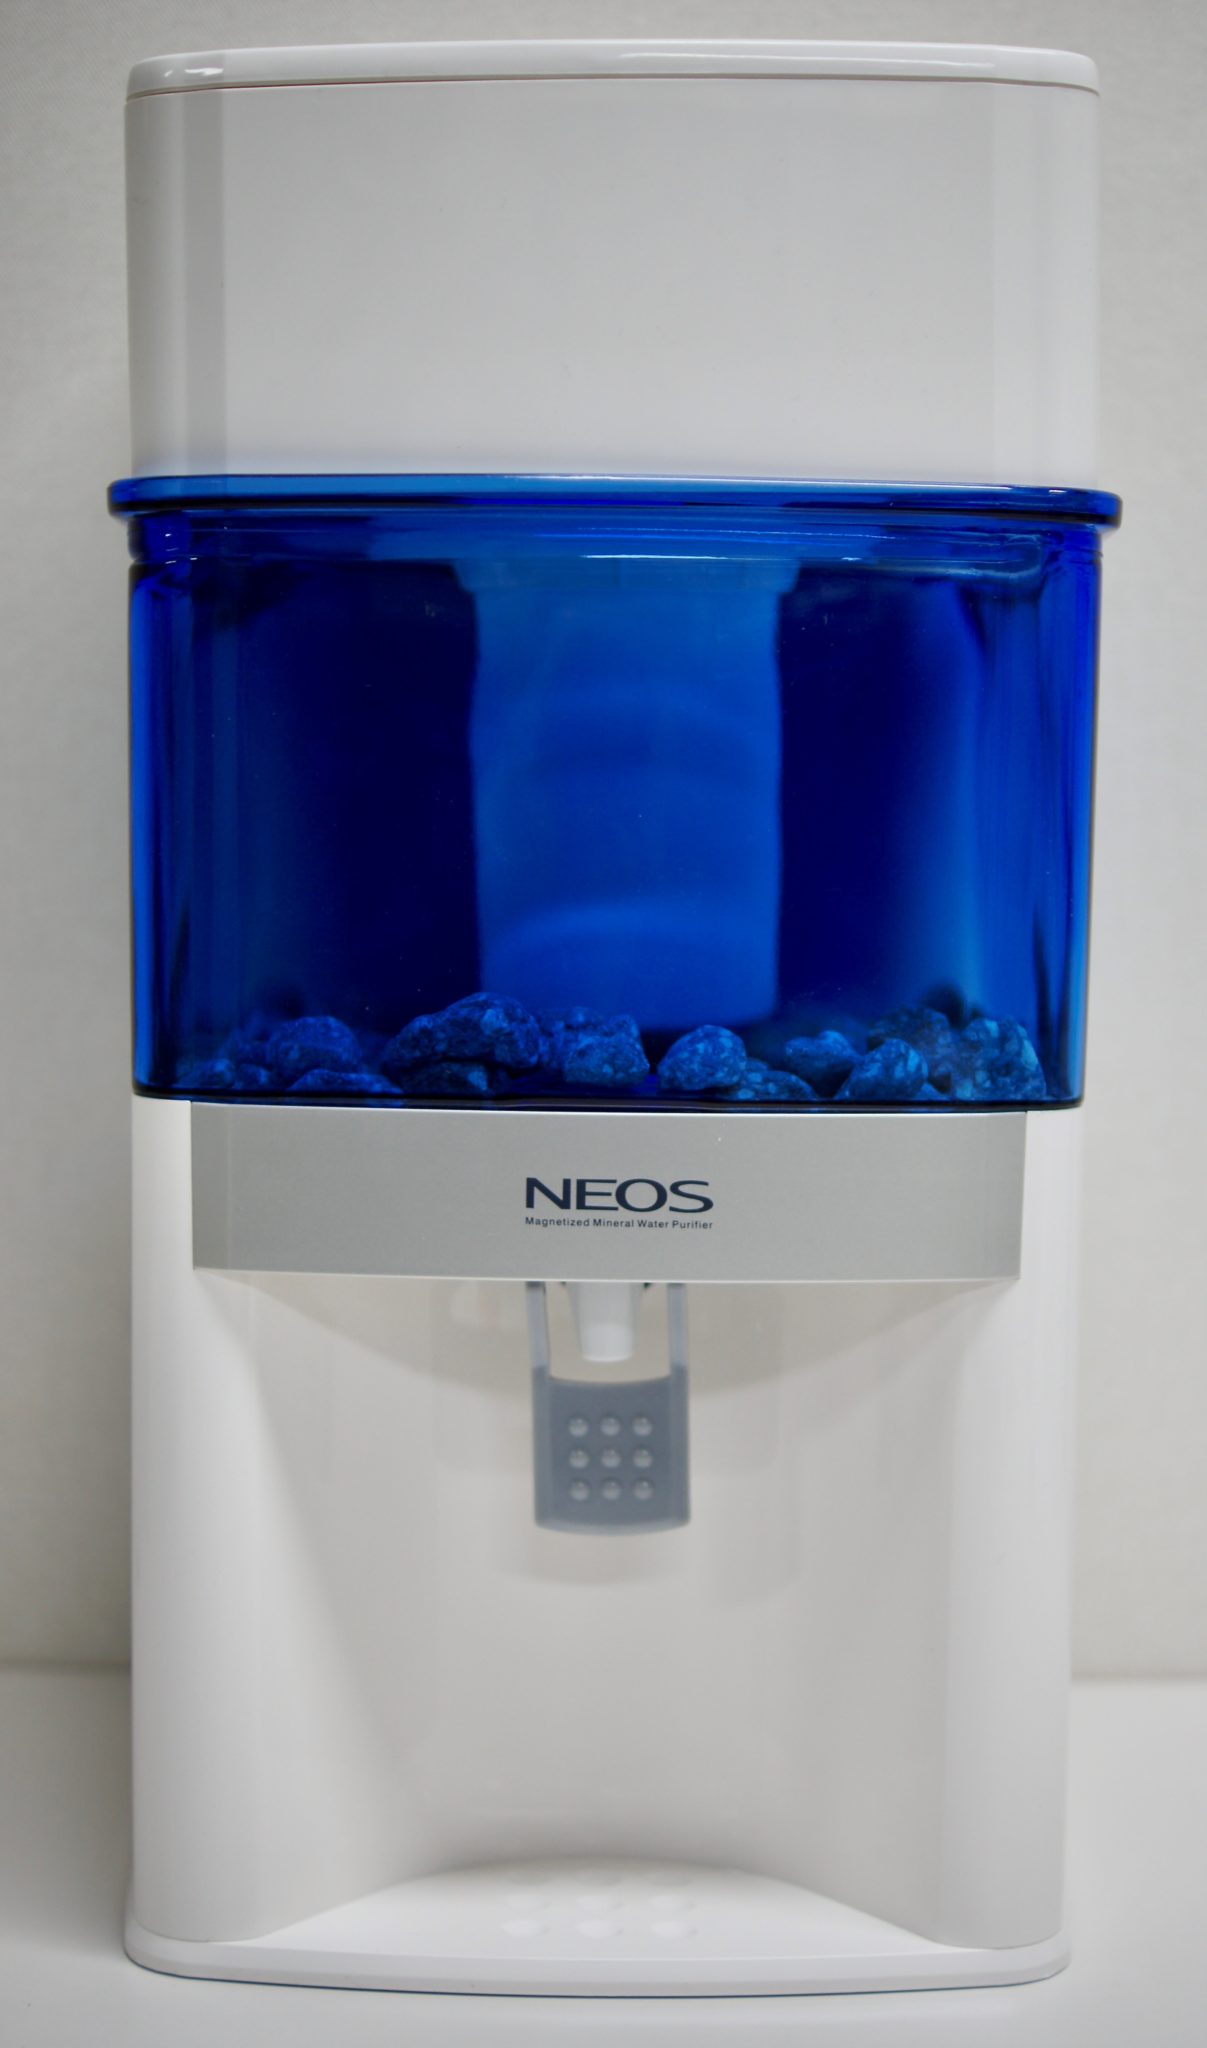 Aqualine Neos waterfilter voor op het aanrecht, met keramisch filter, meerstappenfilter en kraantje om het gefilterde water te tappen.z